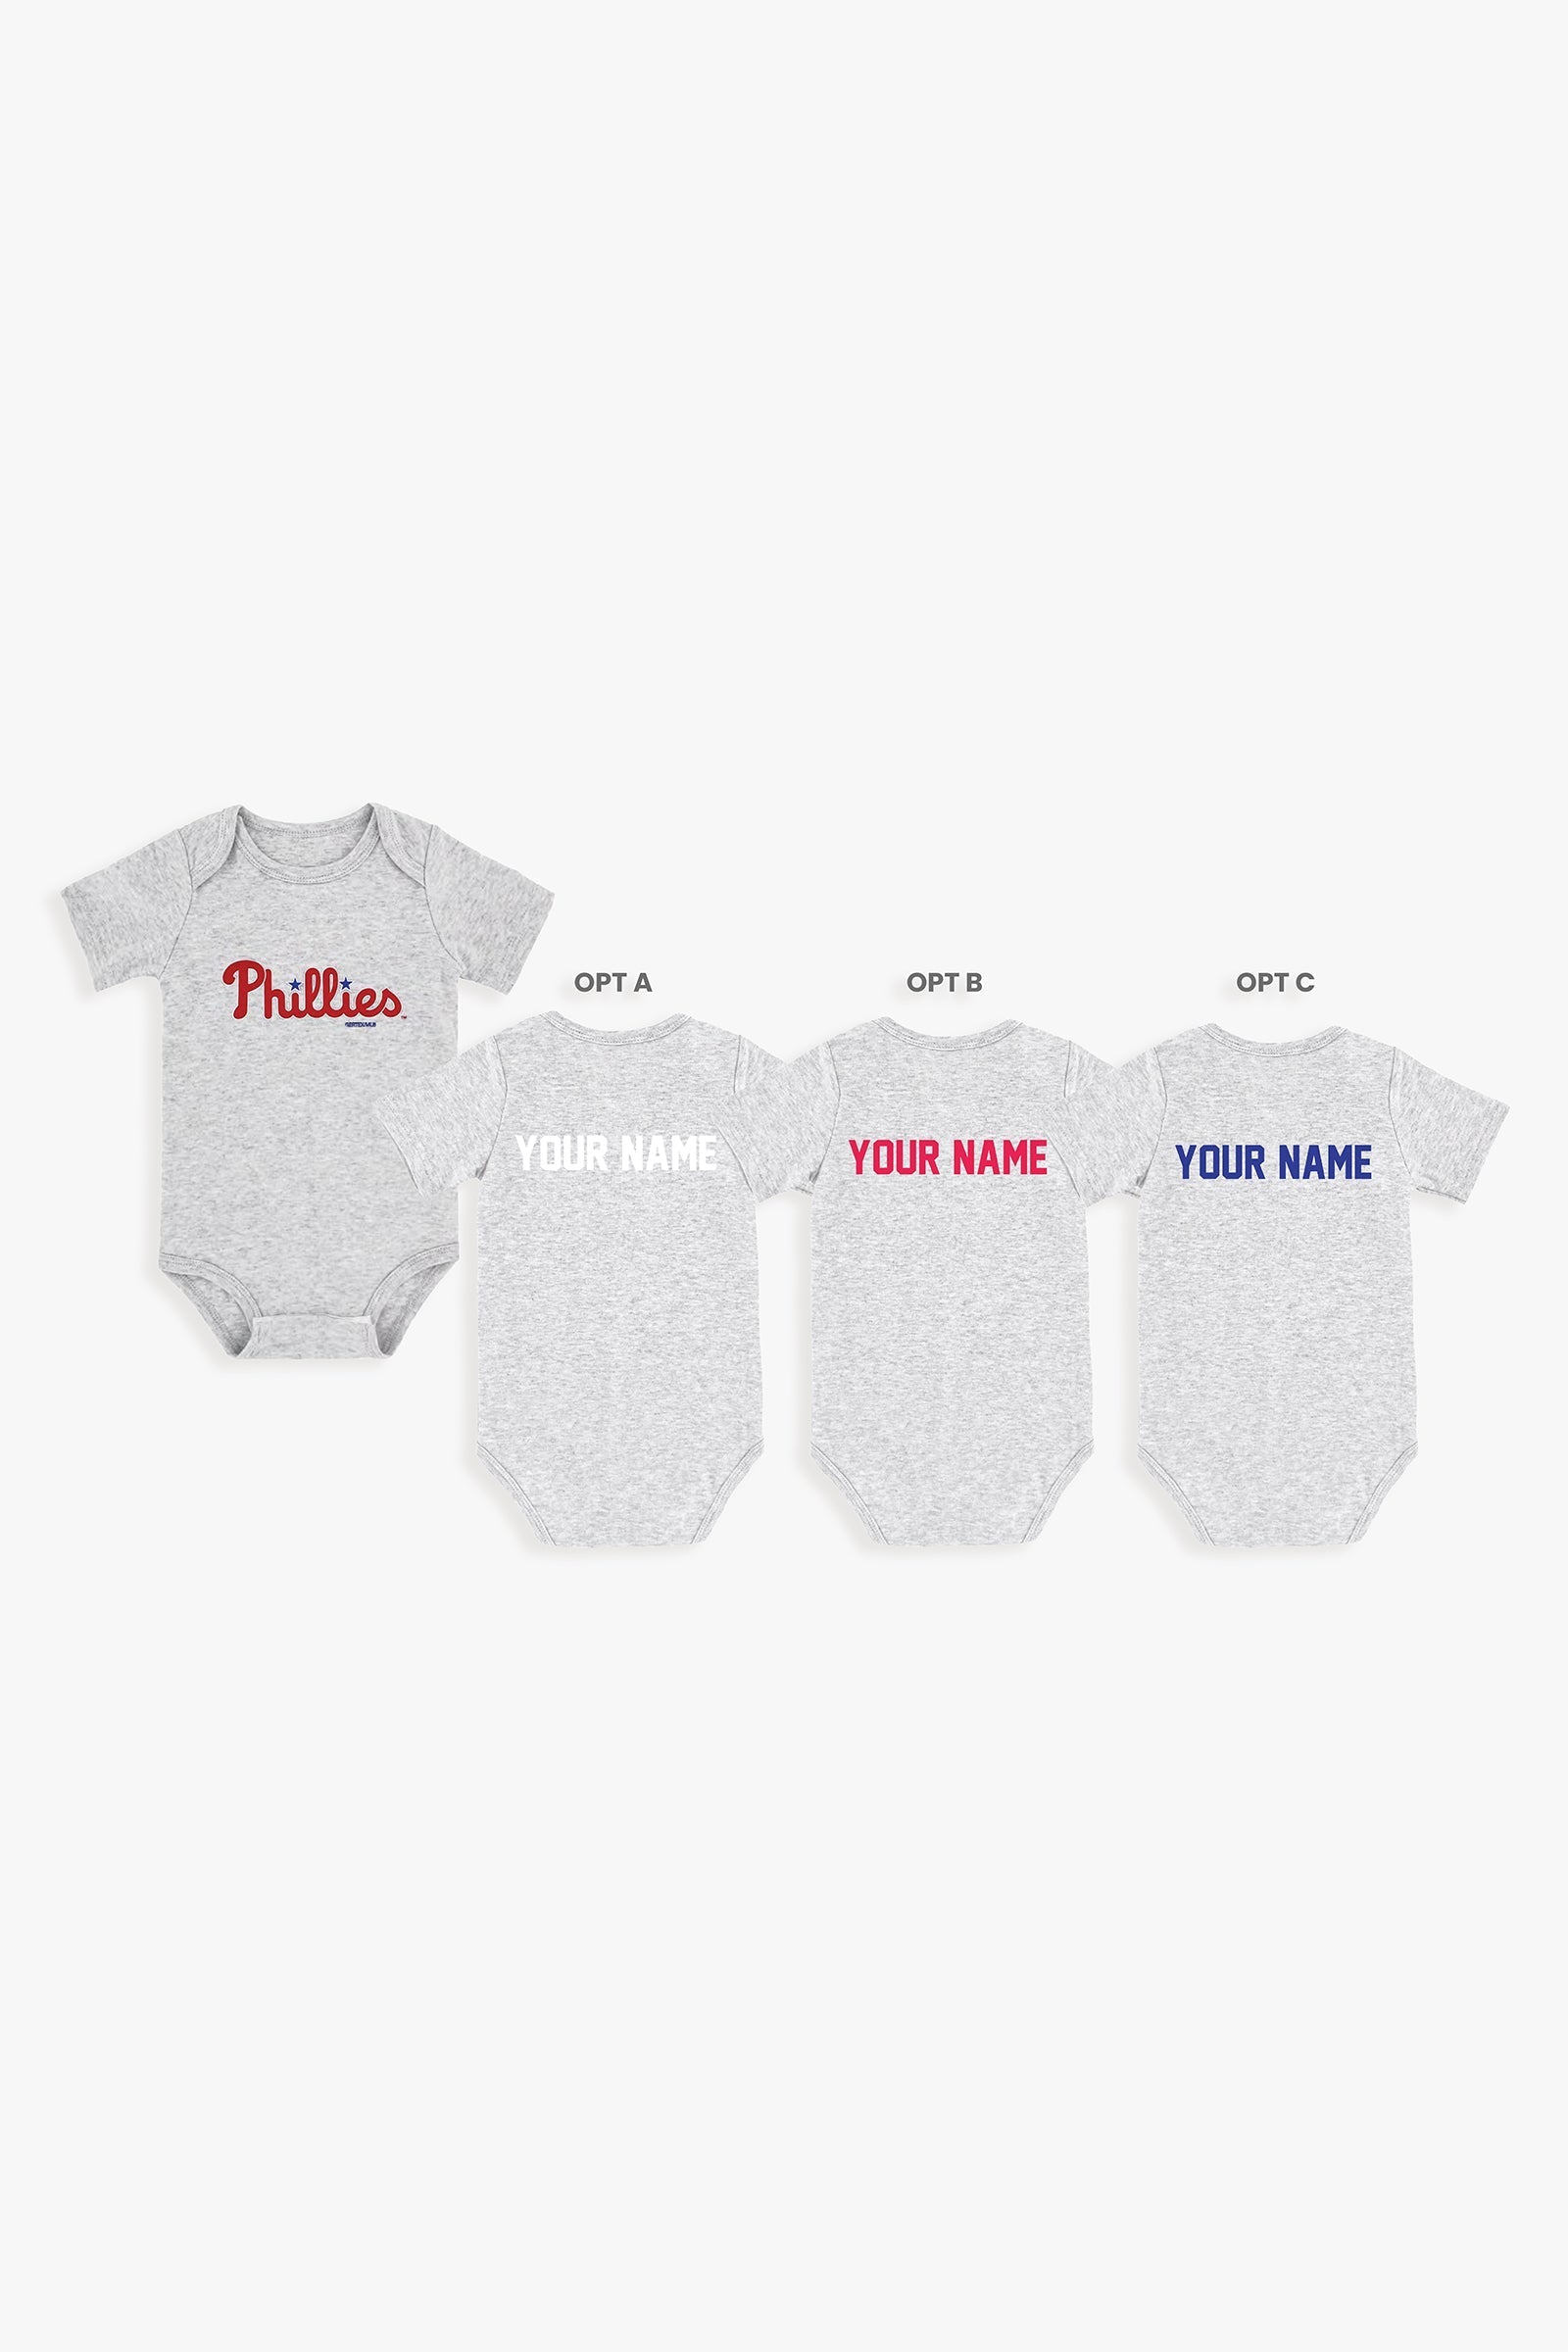 Gertex Customizable MLB Baby Onesie Bodysuit in Grey (12-18 Months)